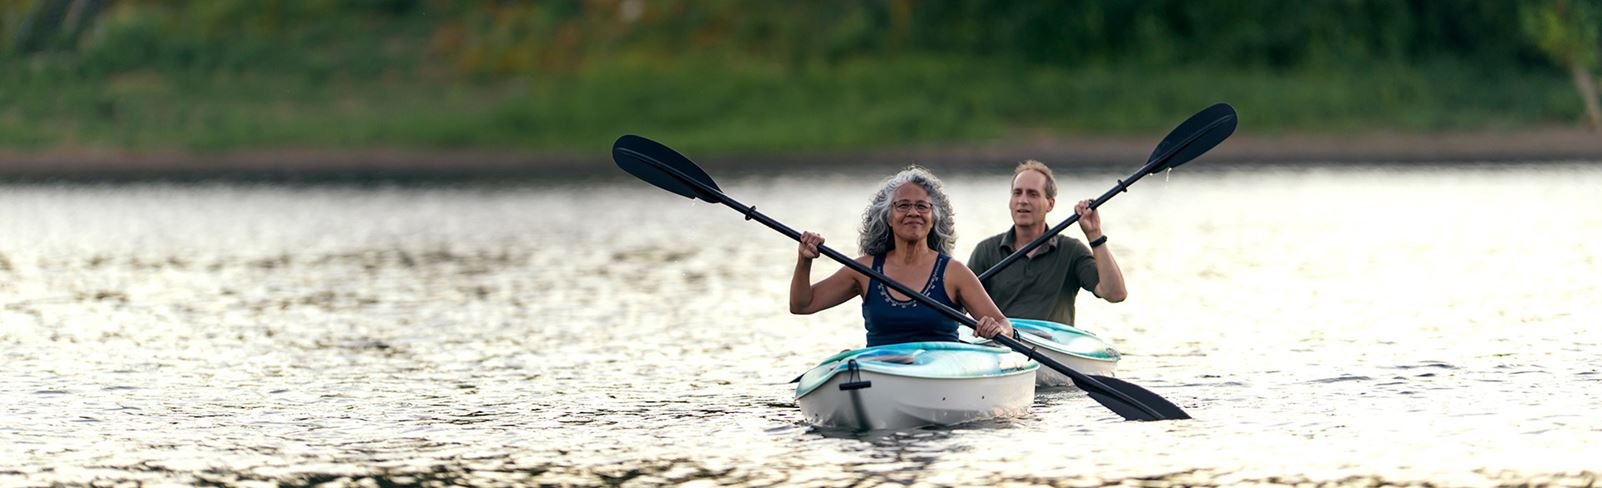 tehaleh-two-people-kayaking-on-a-lake.jpg